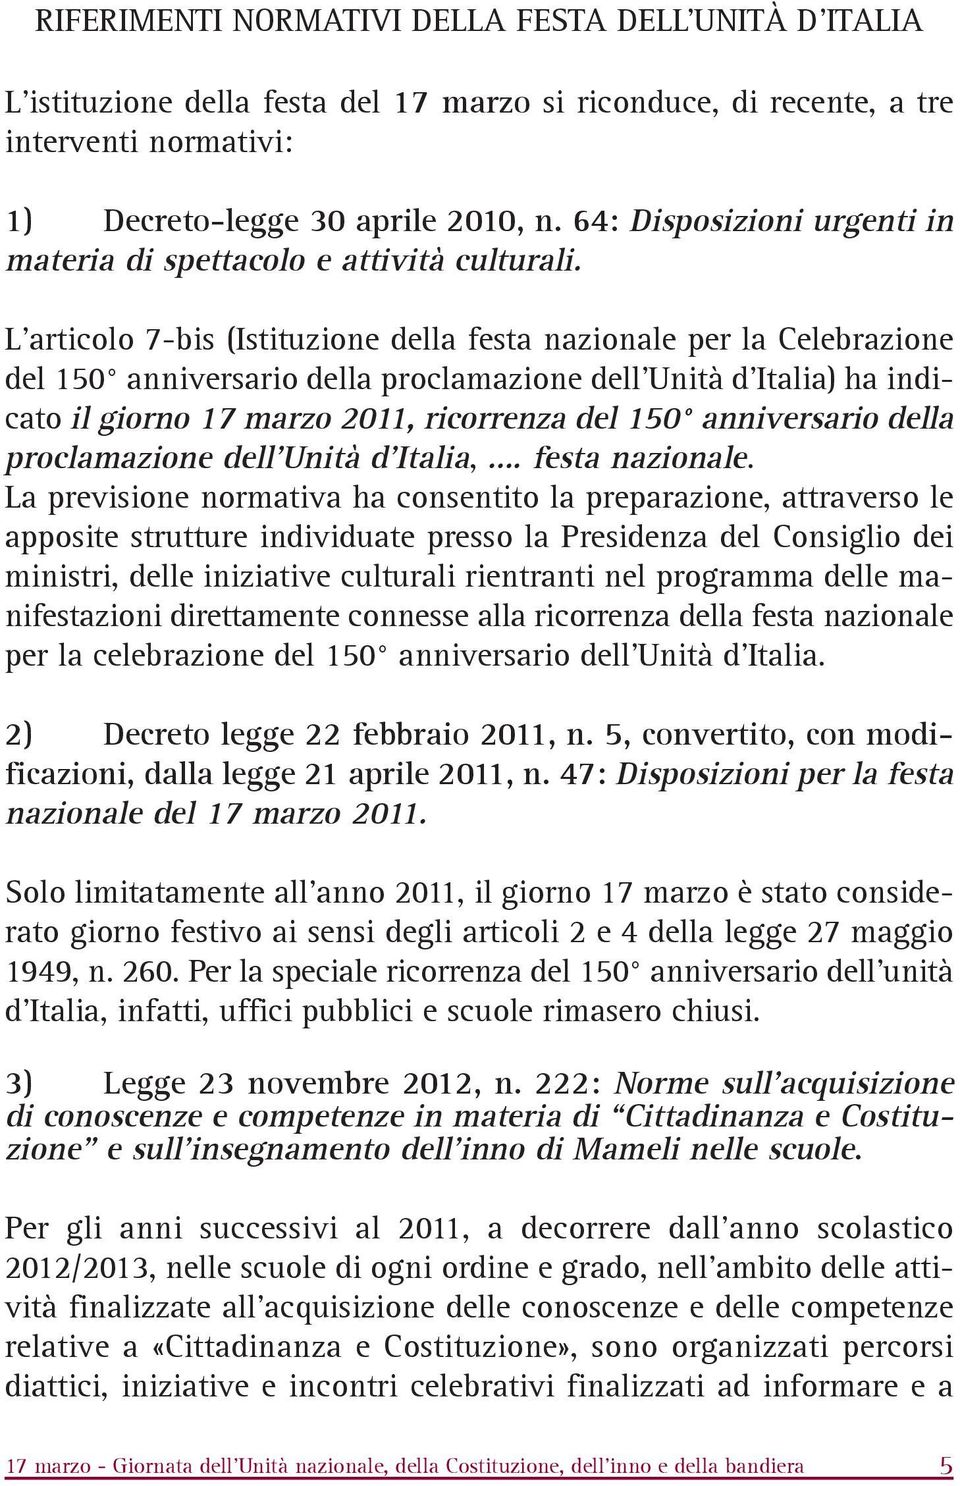 L'articolo 7-bis (Istituzione della festa nazionale per la Celebrazione del 150 anniversario della proclamazione dell'unità d'italia) ha indicato il giorno 17 marzo 2011, ricorrenza del 150